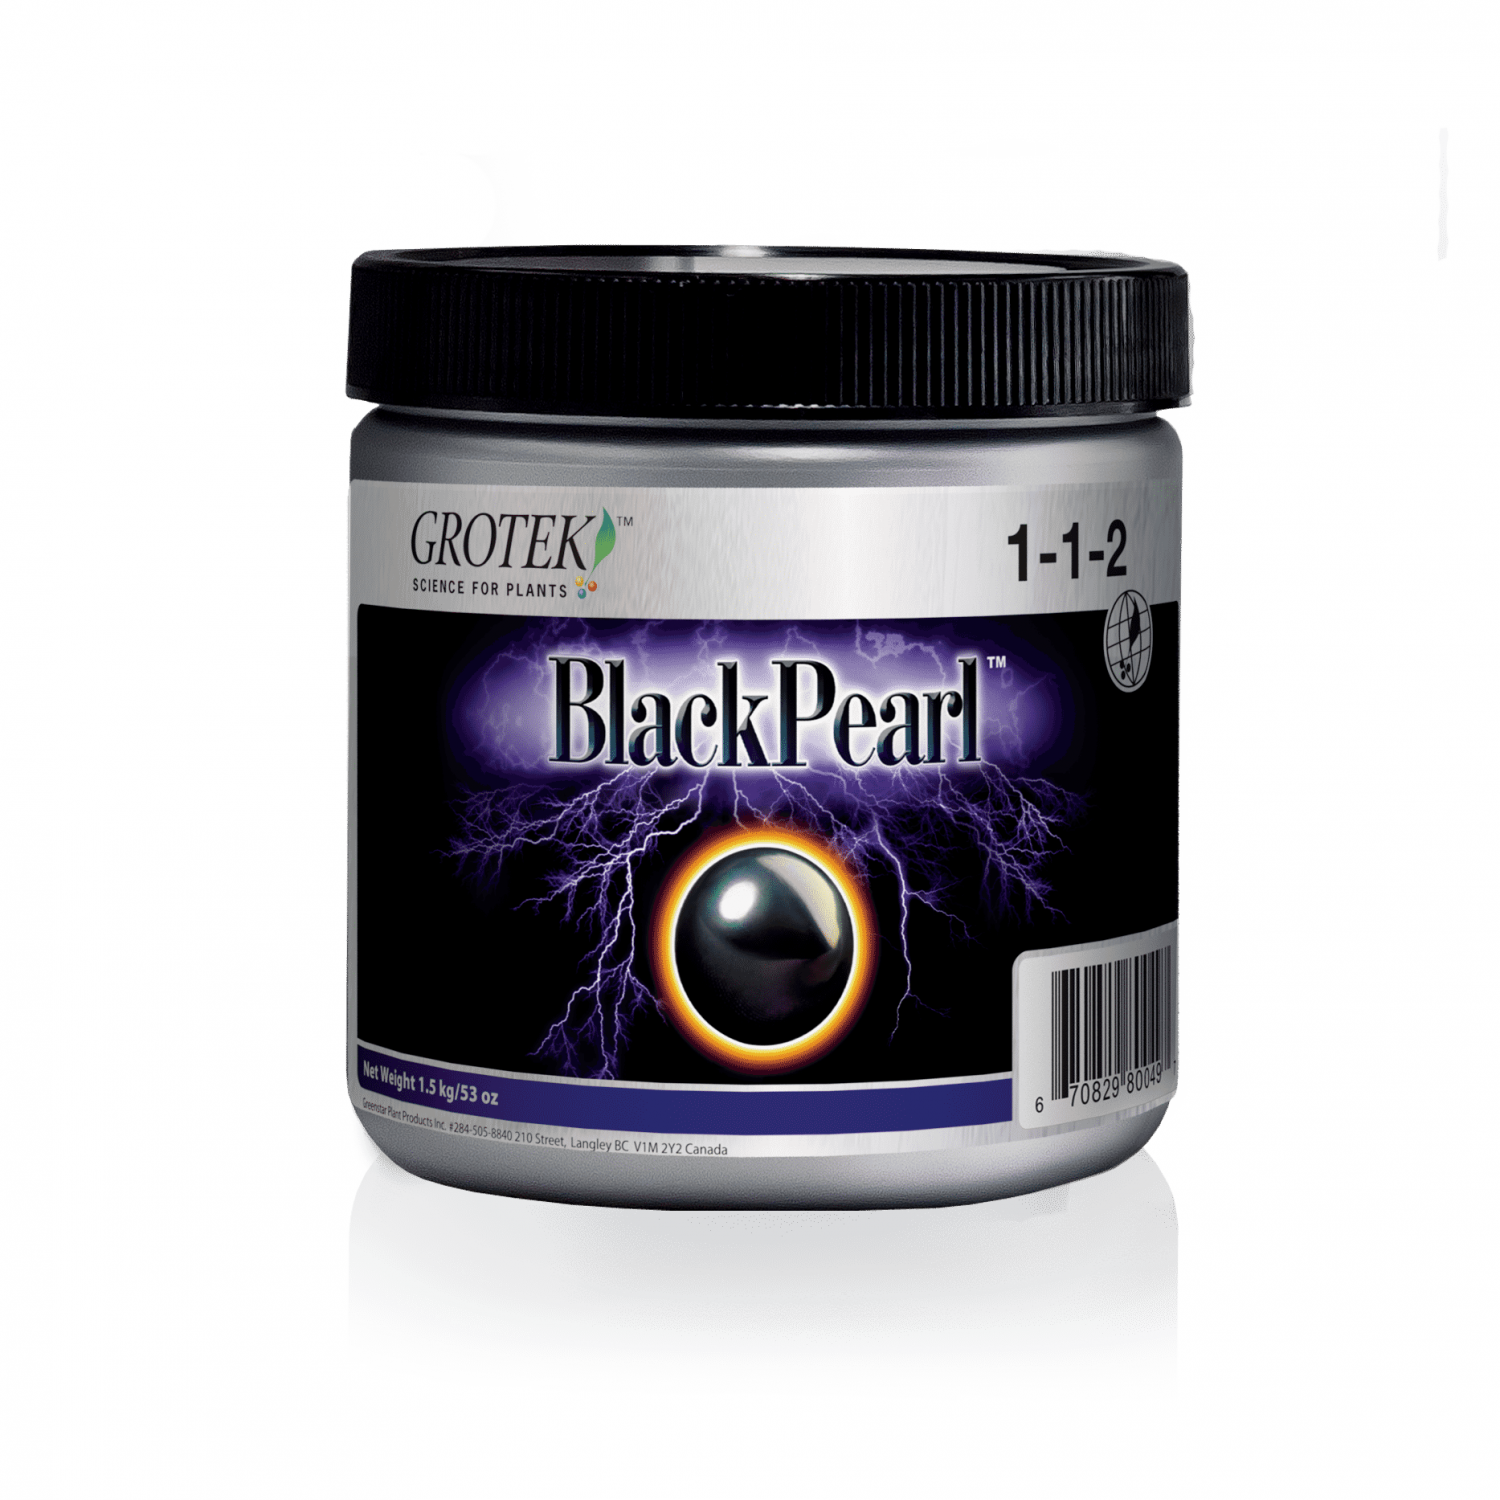 Black Pearl by Grotek